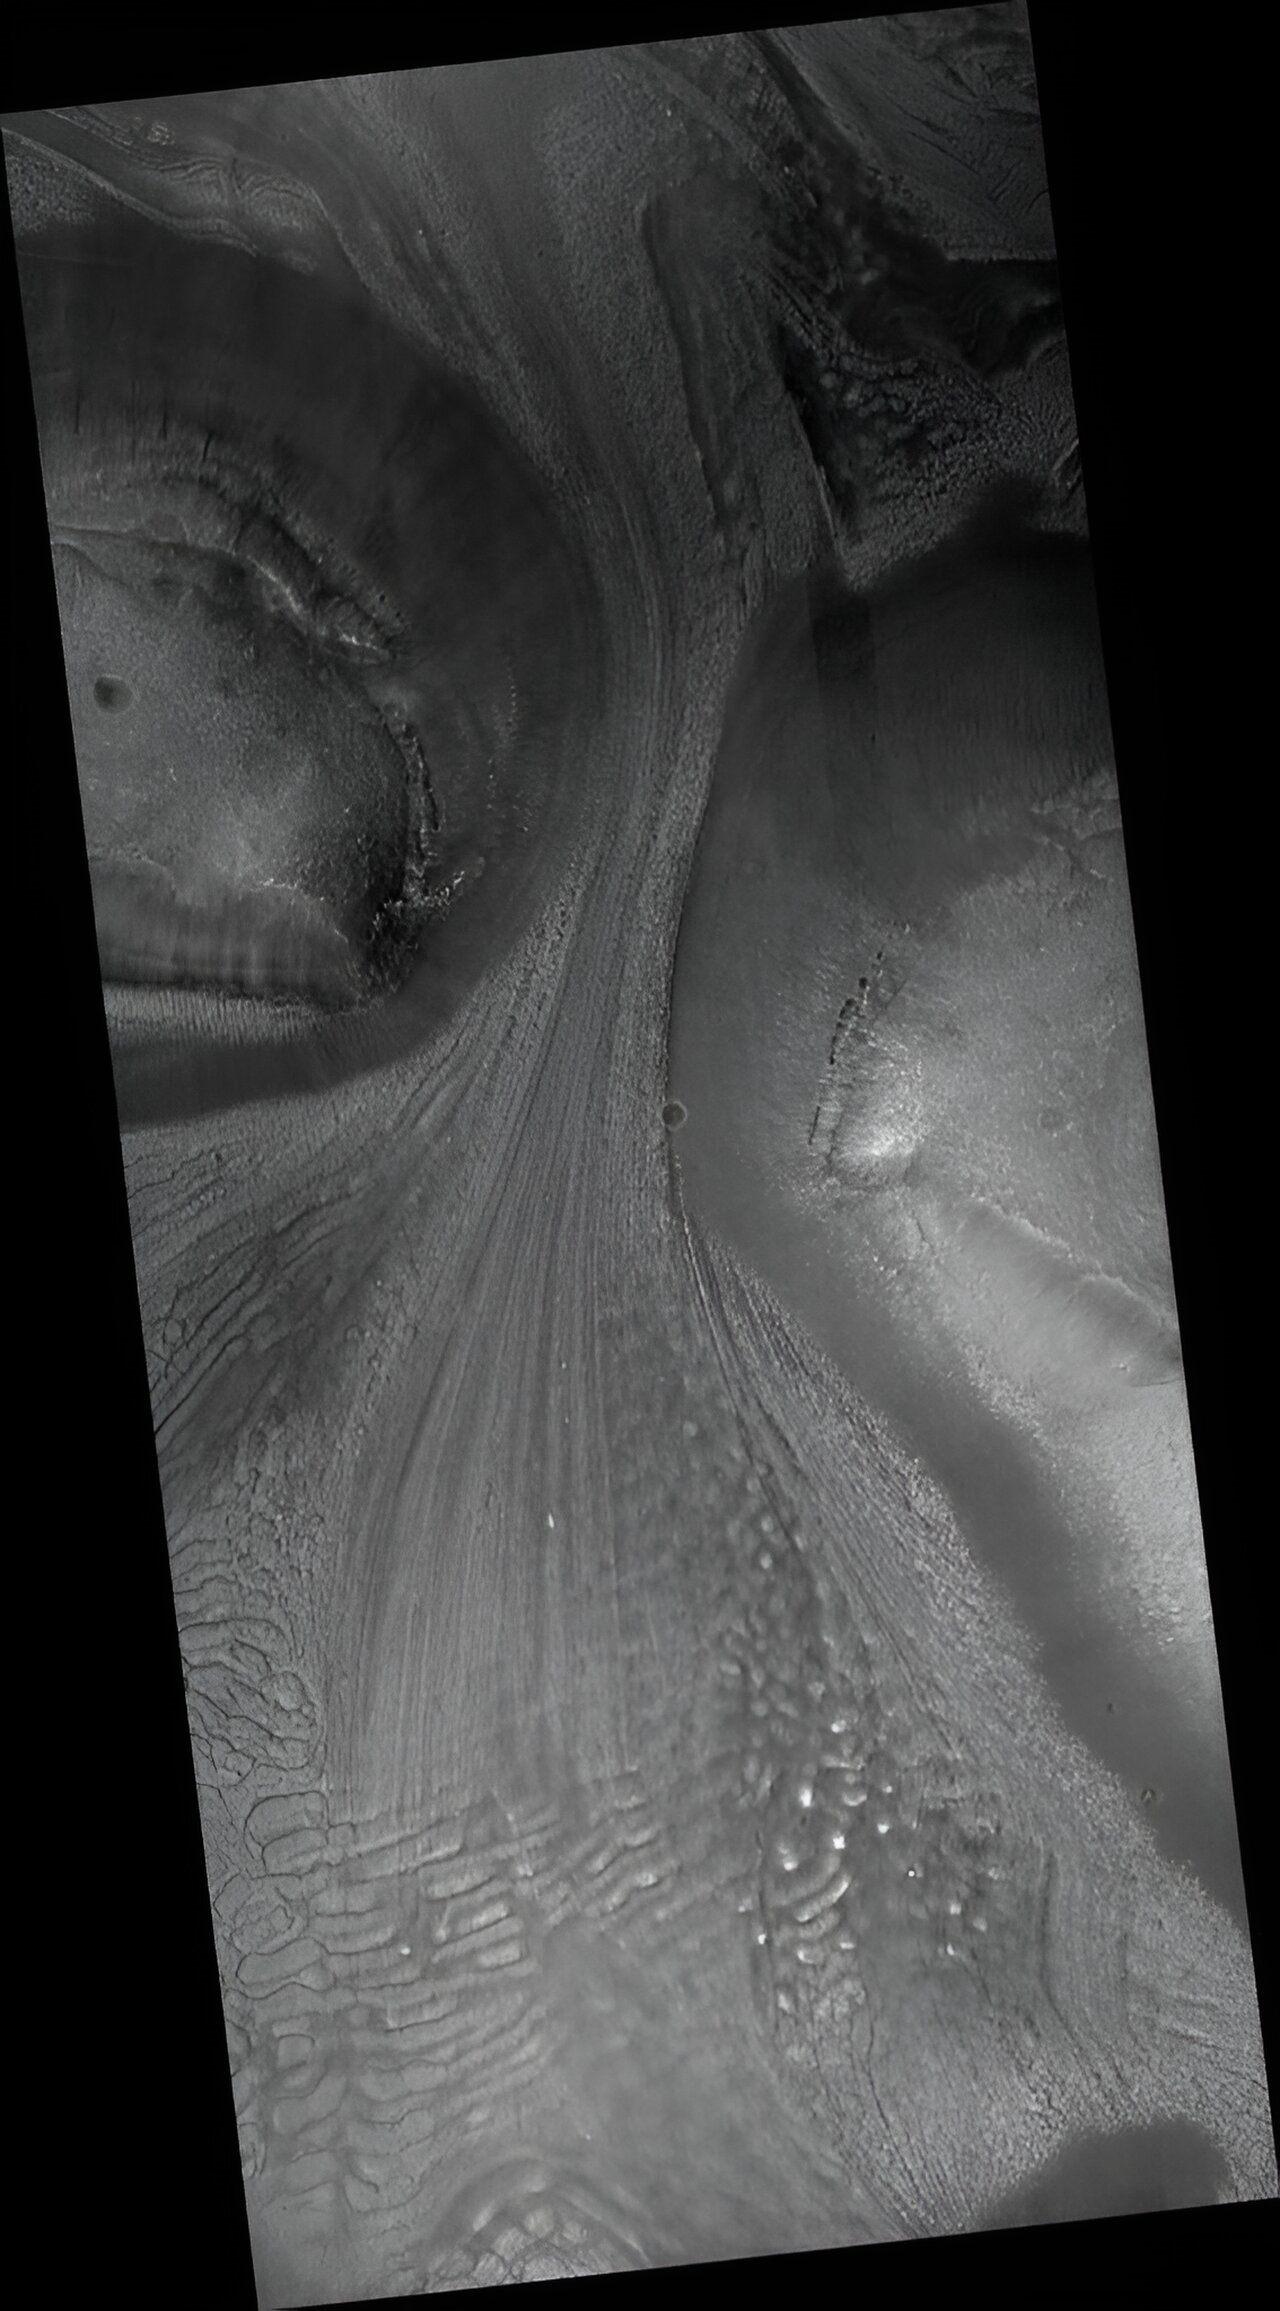 火星偵察軌道衛星（MRO），所拍攝的火星冰川作用地形全景圖。 可以看見在平行線狀擦痕與沉積物的前端，形成由冰川前緣增長與消退的交互作用，所產生的橫向堆積形態沈積物。圖照來源：Phys.org。 